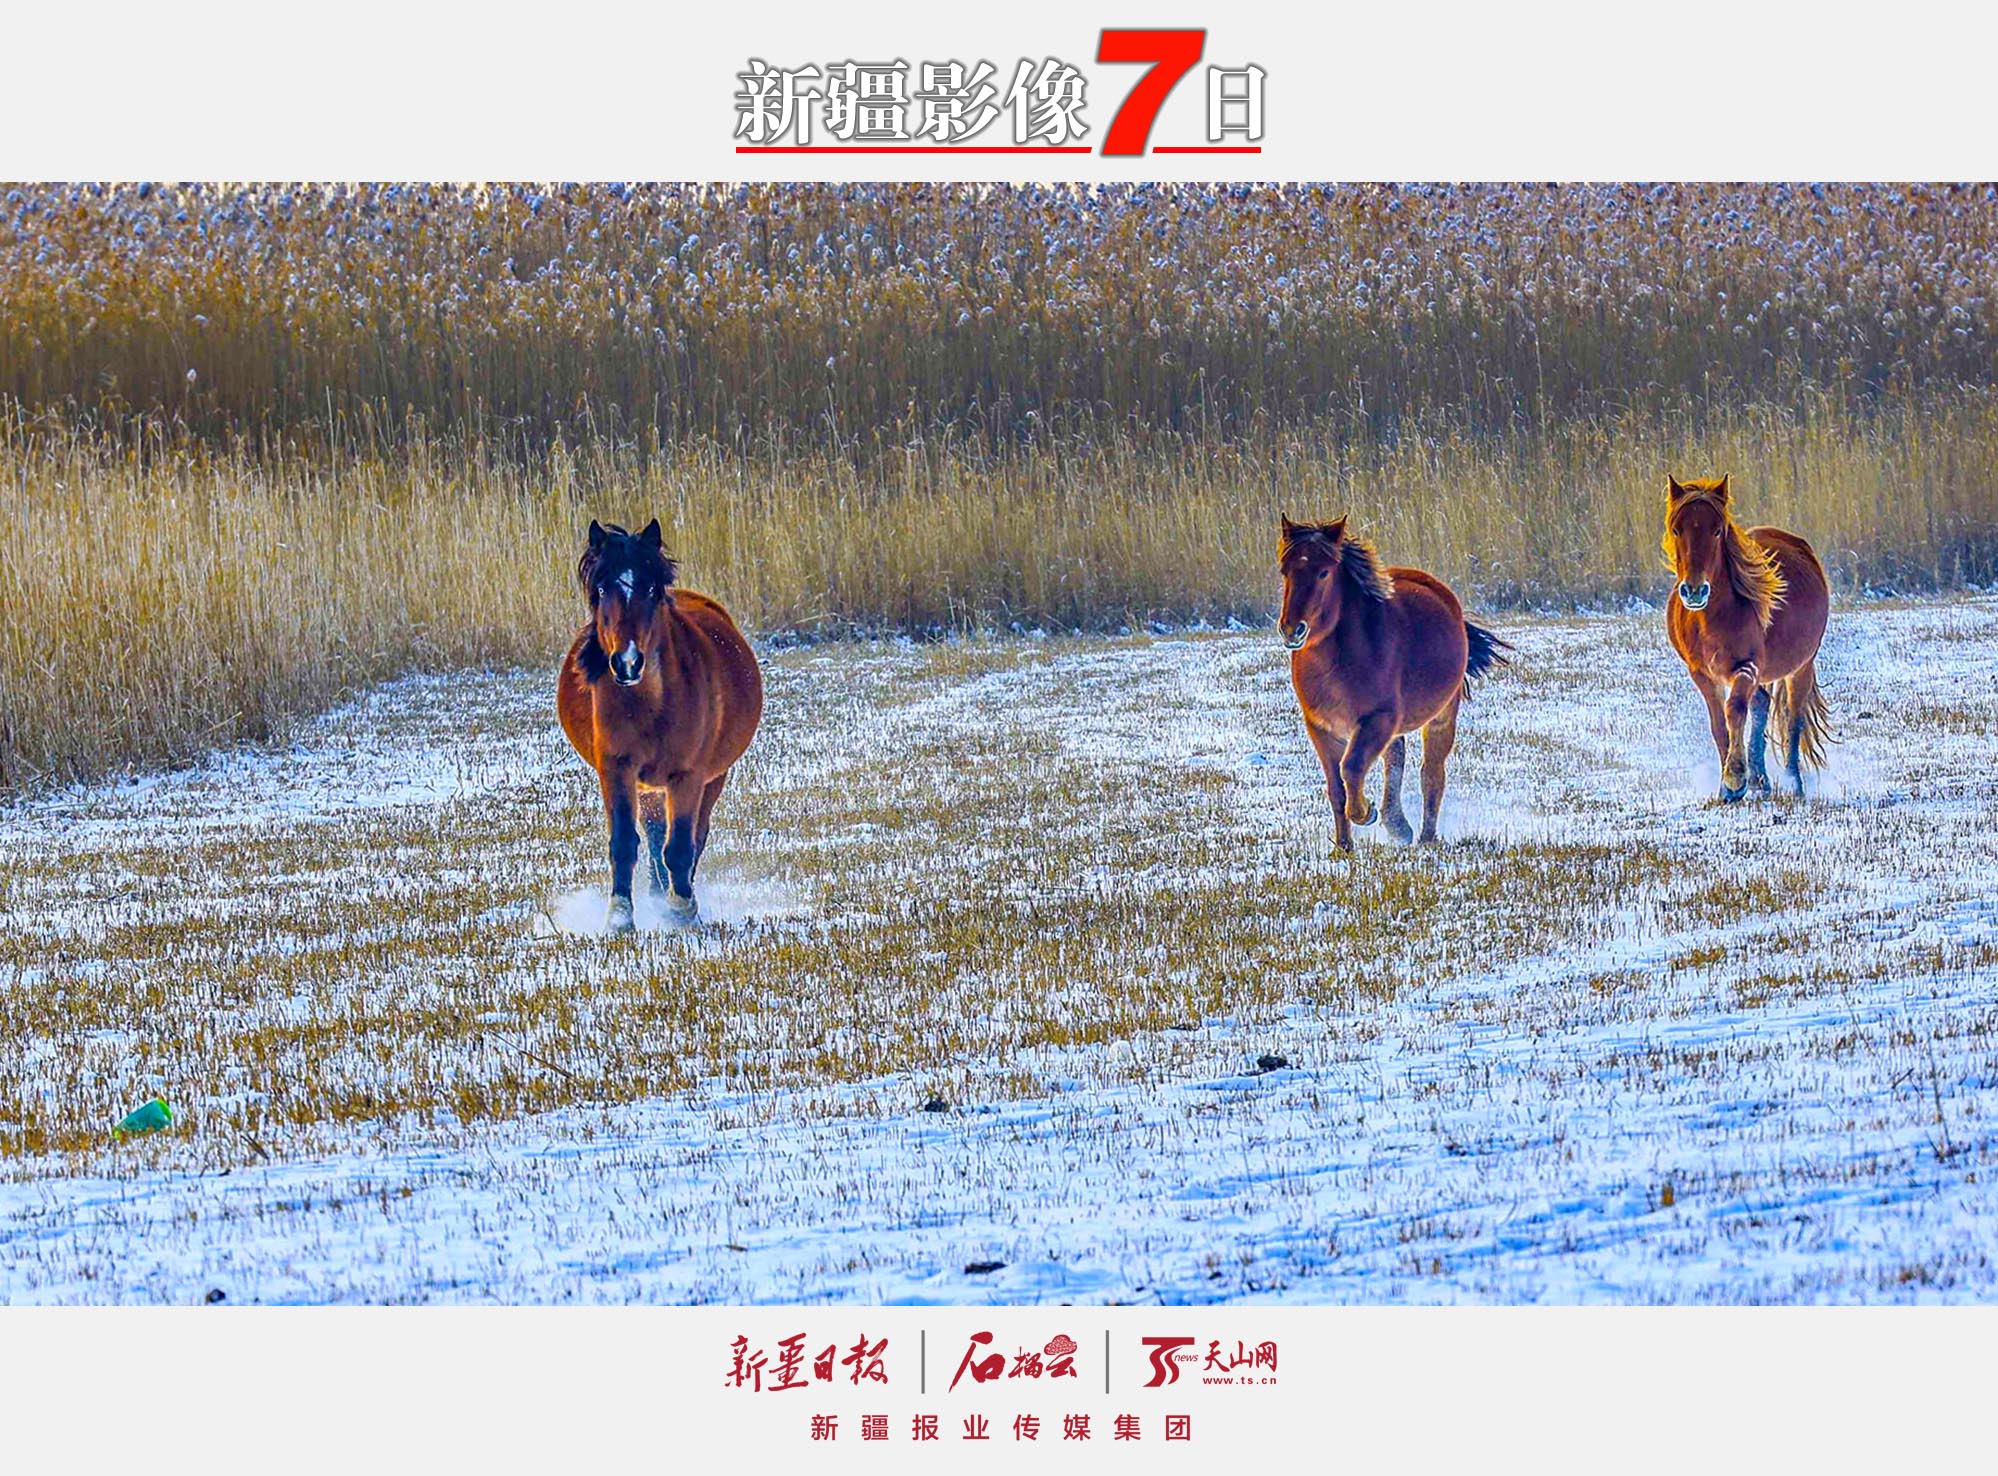 12月7日，骏马在那拉提国家湿地公园的雪地上奔跑。大雪节气，新源县那拉提国家湿地公园银装素裹，奔驰的骏马为寂静的雪原平添一份活力。 张文庭摄